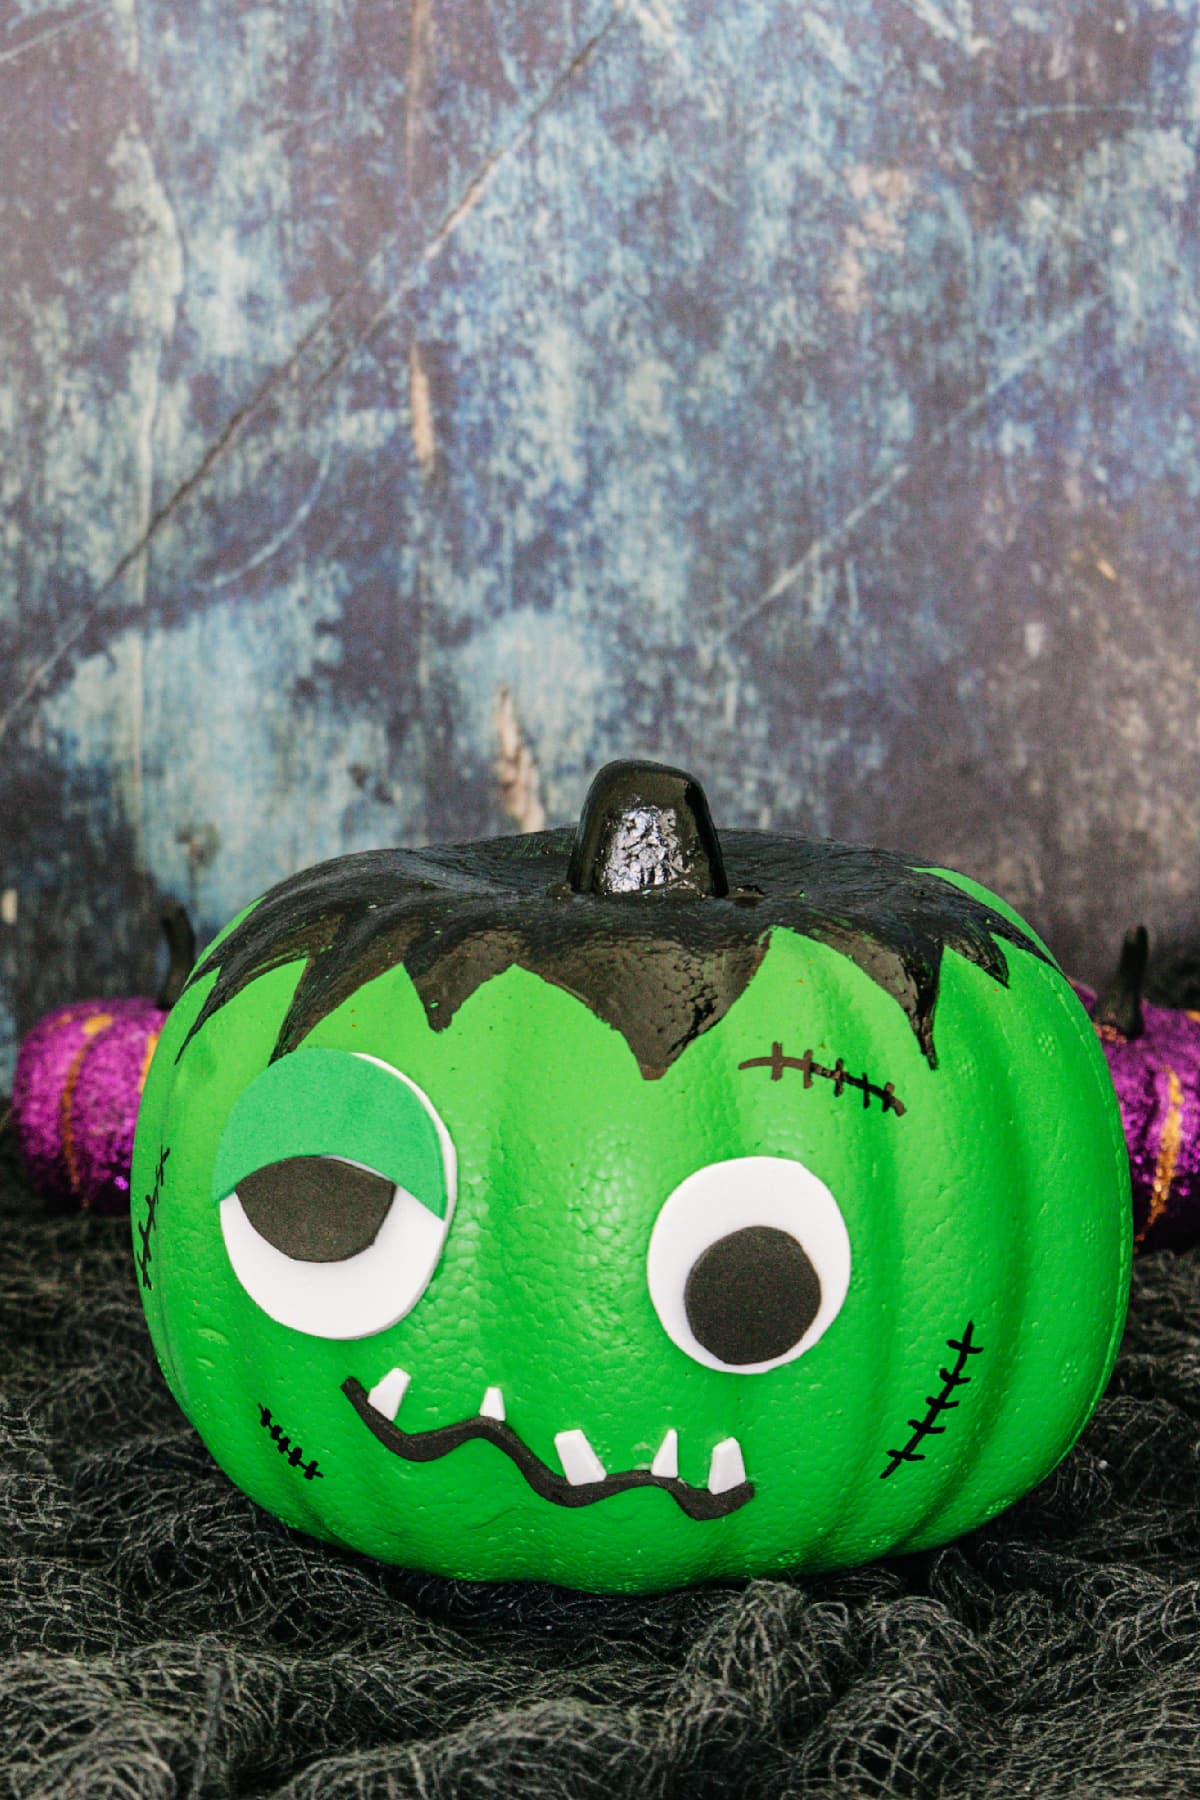 Frankenstein pumpkin with silly face